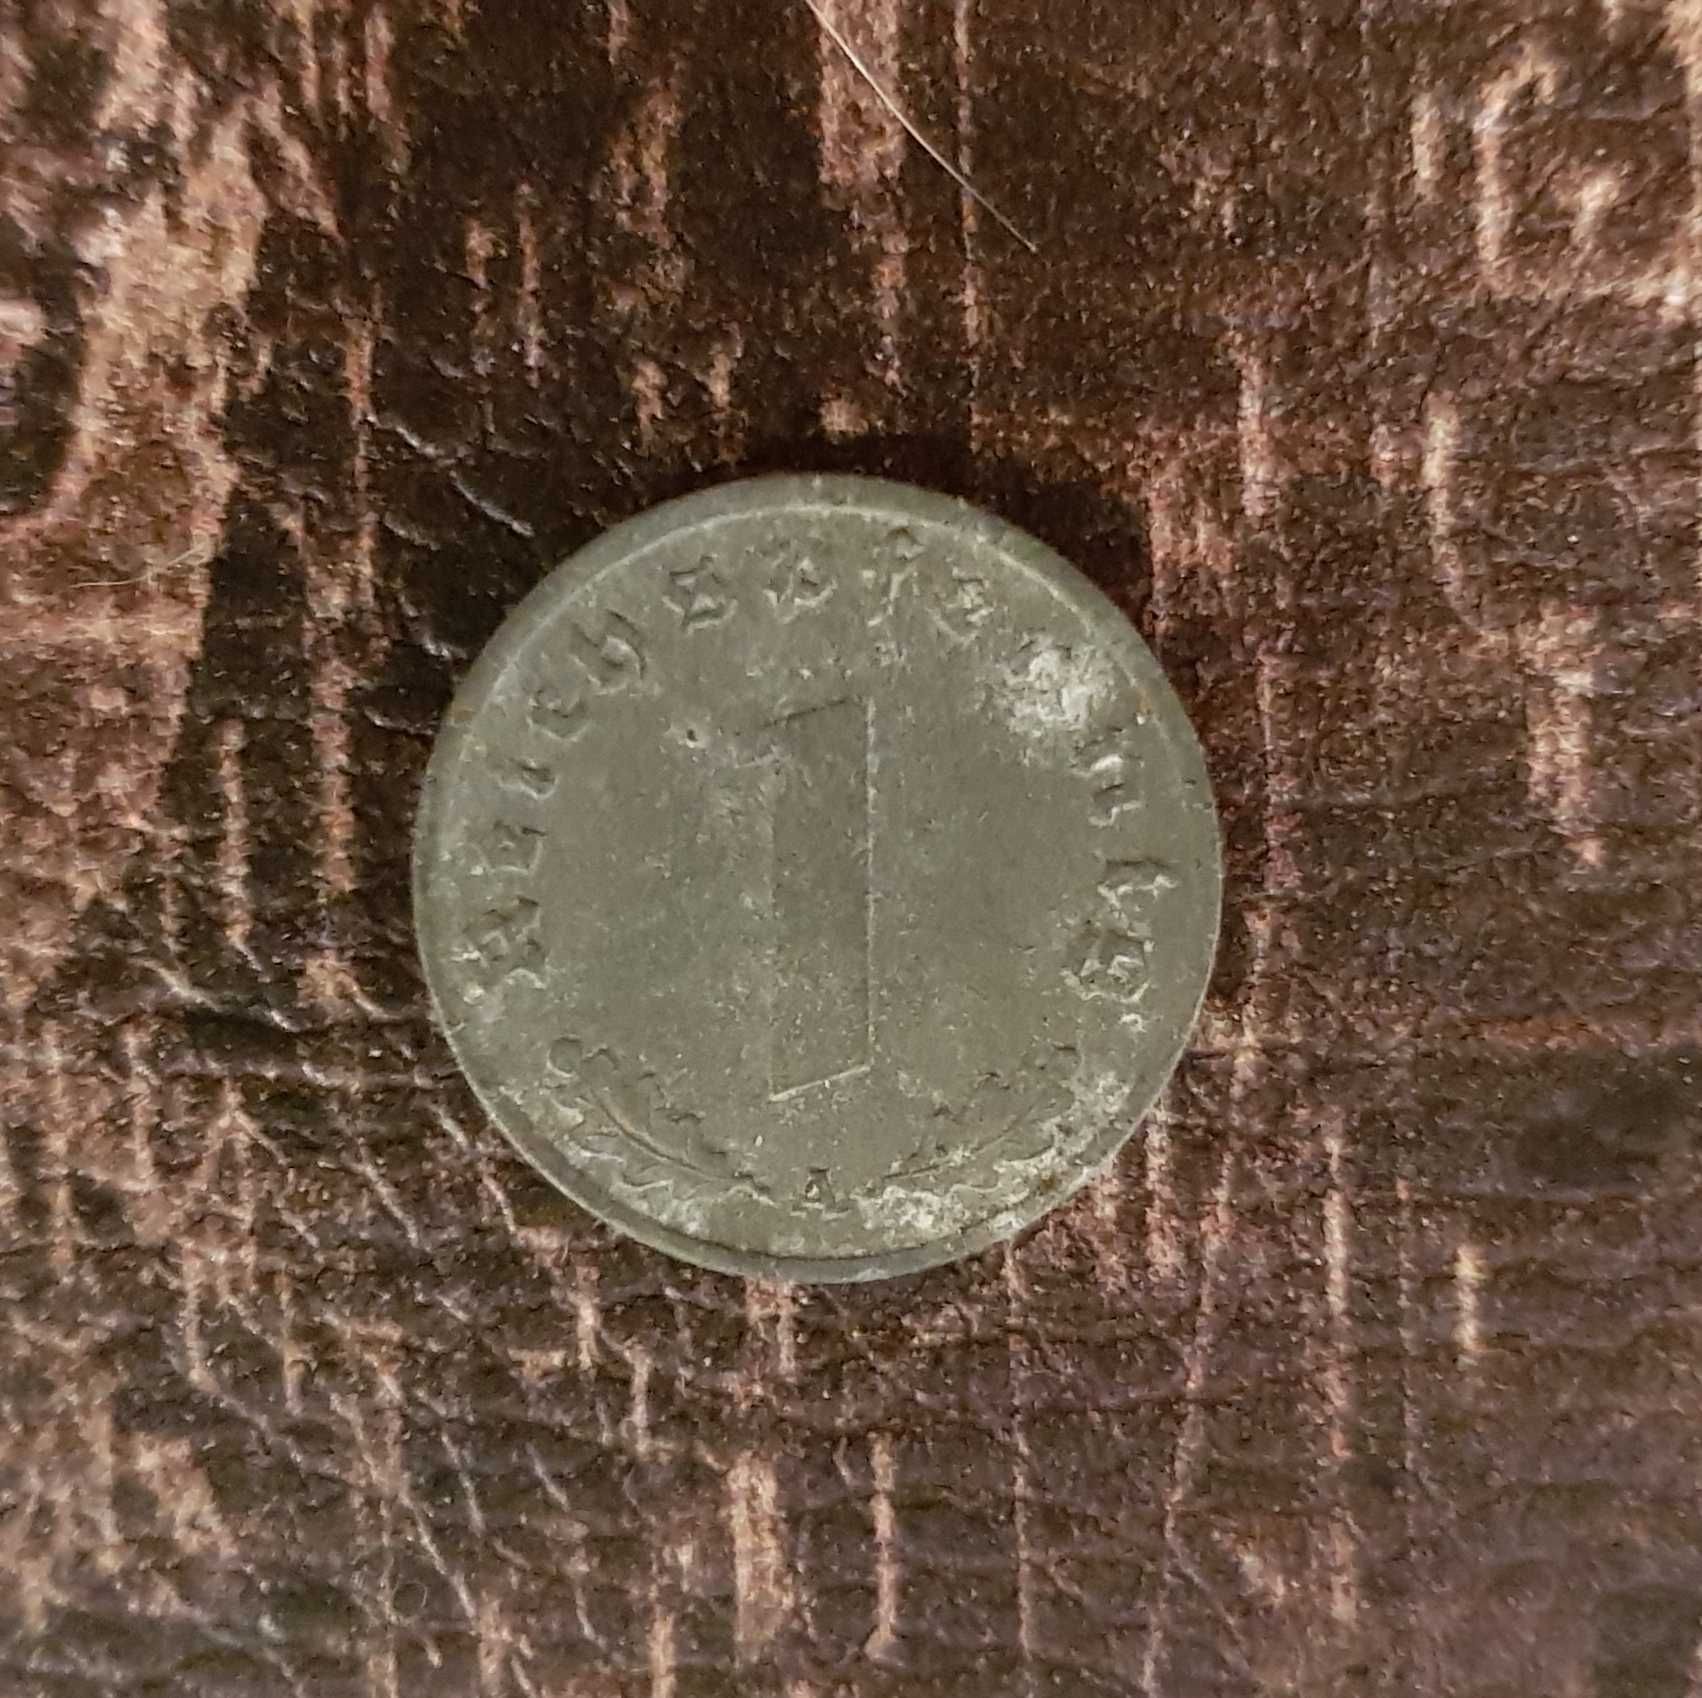 1 Reichspfennig Deutsches Reich 1943 (A) - 1 pfennig Niemcy